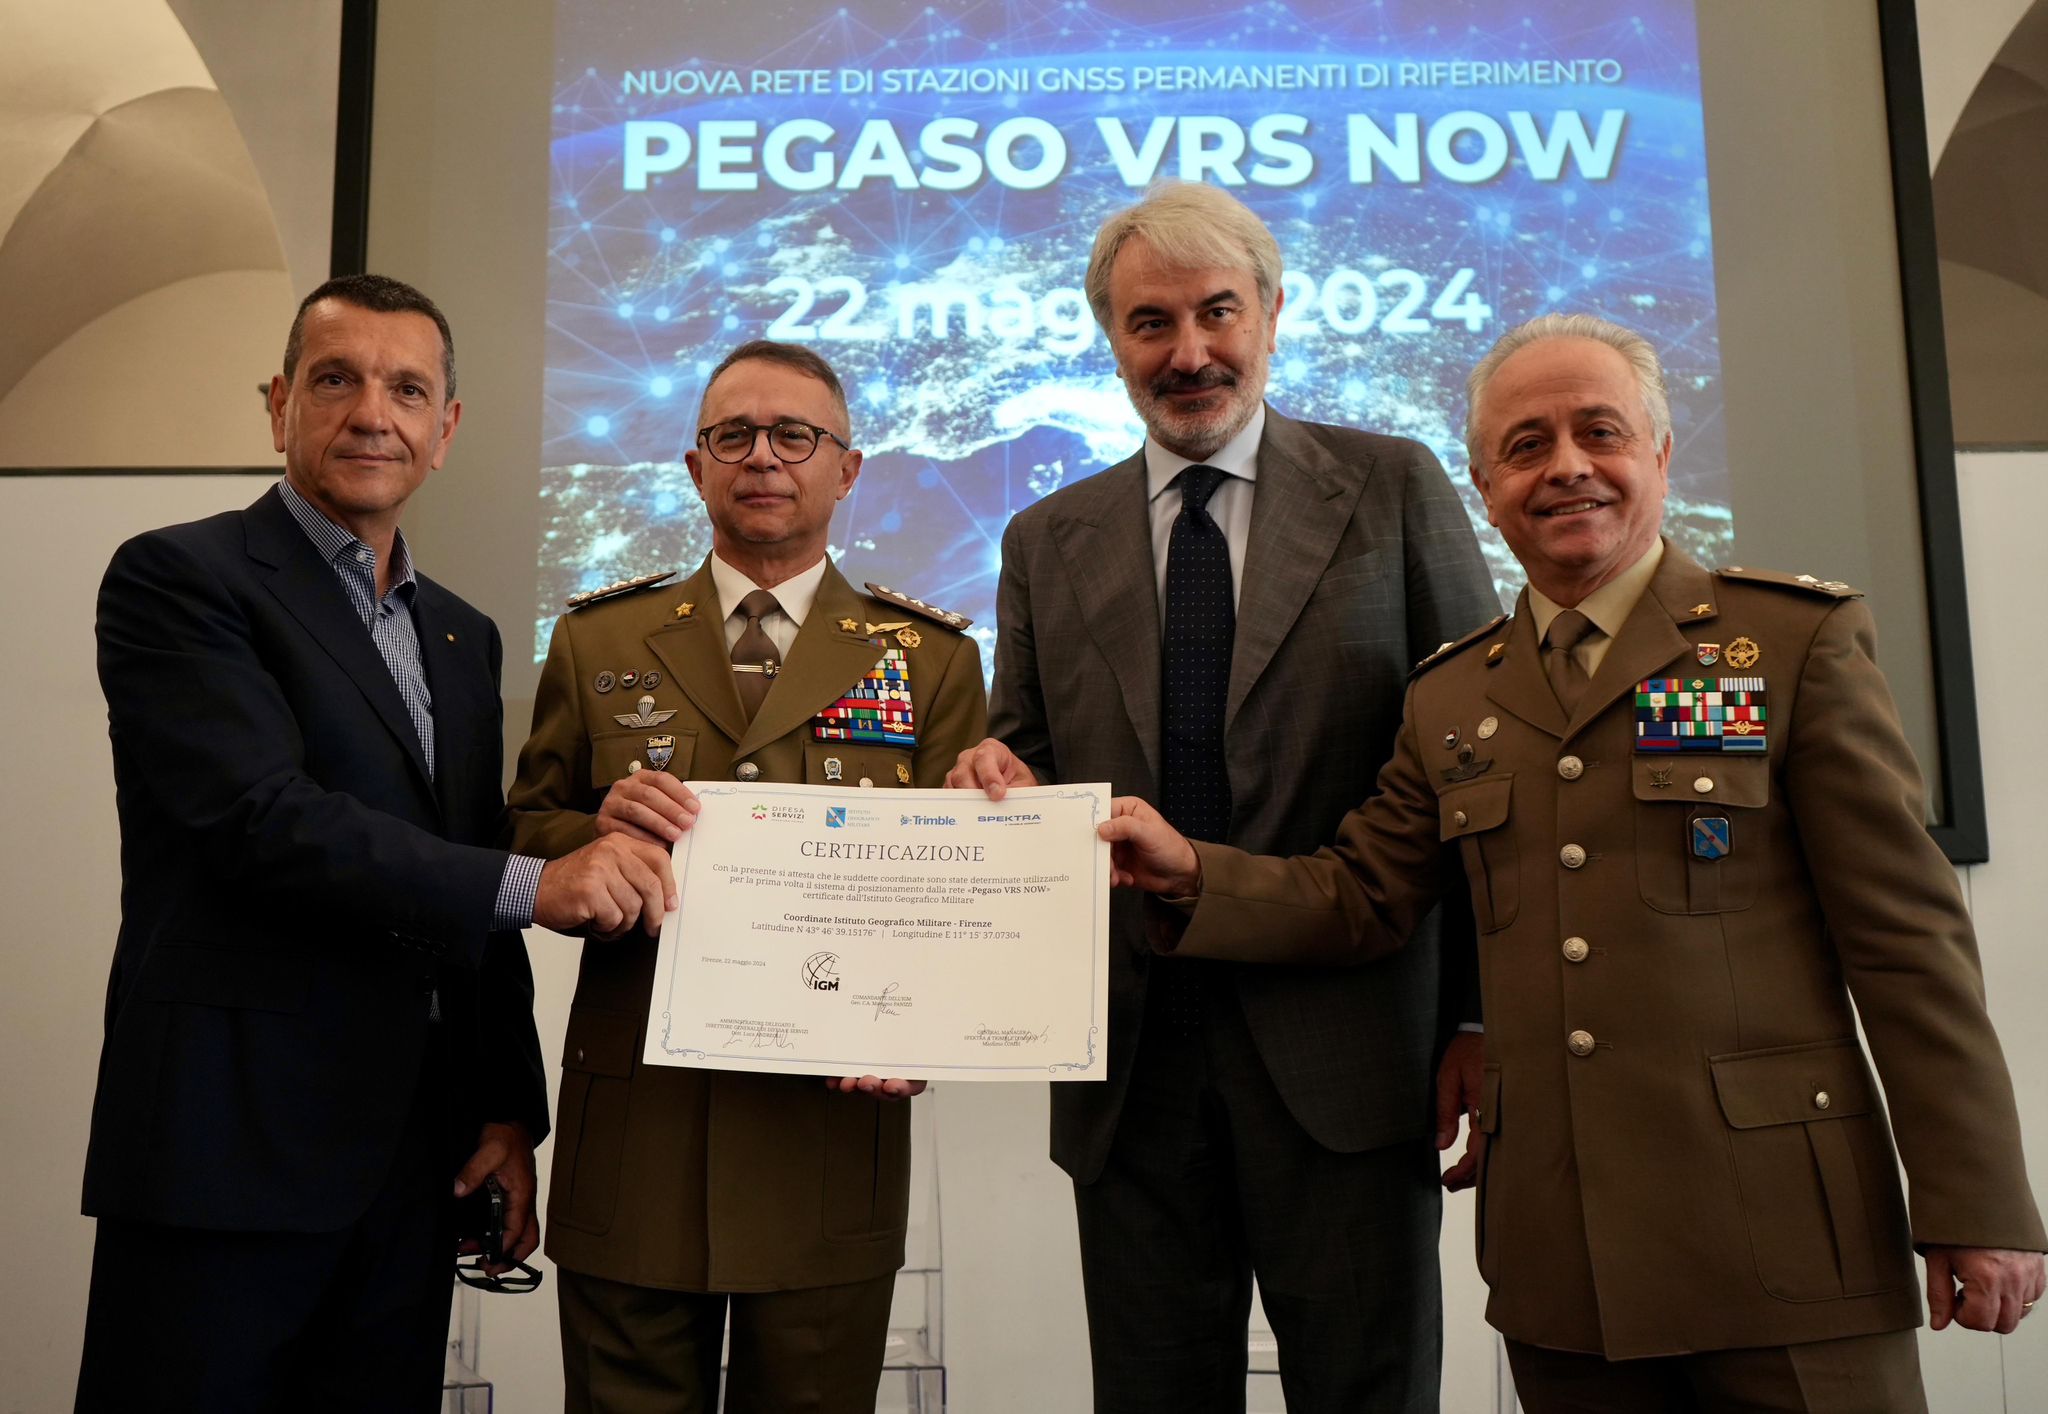 Presentato progetto Pegaso presso Istituto Geografico Militare dell’Esercito Italiano